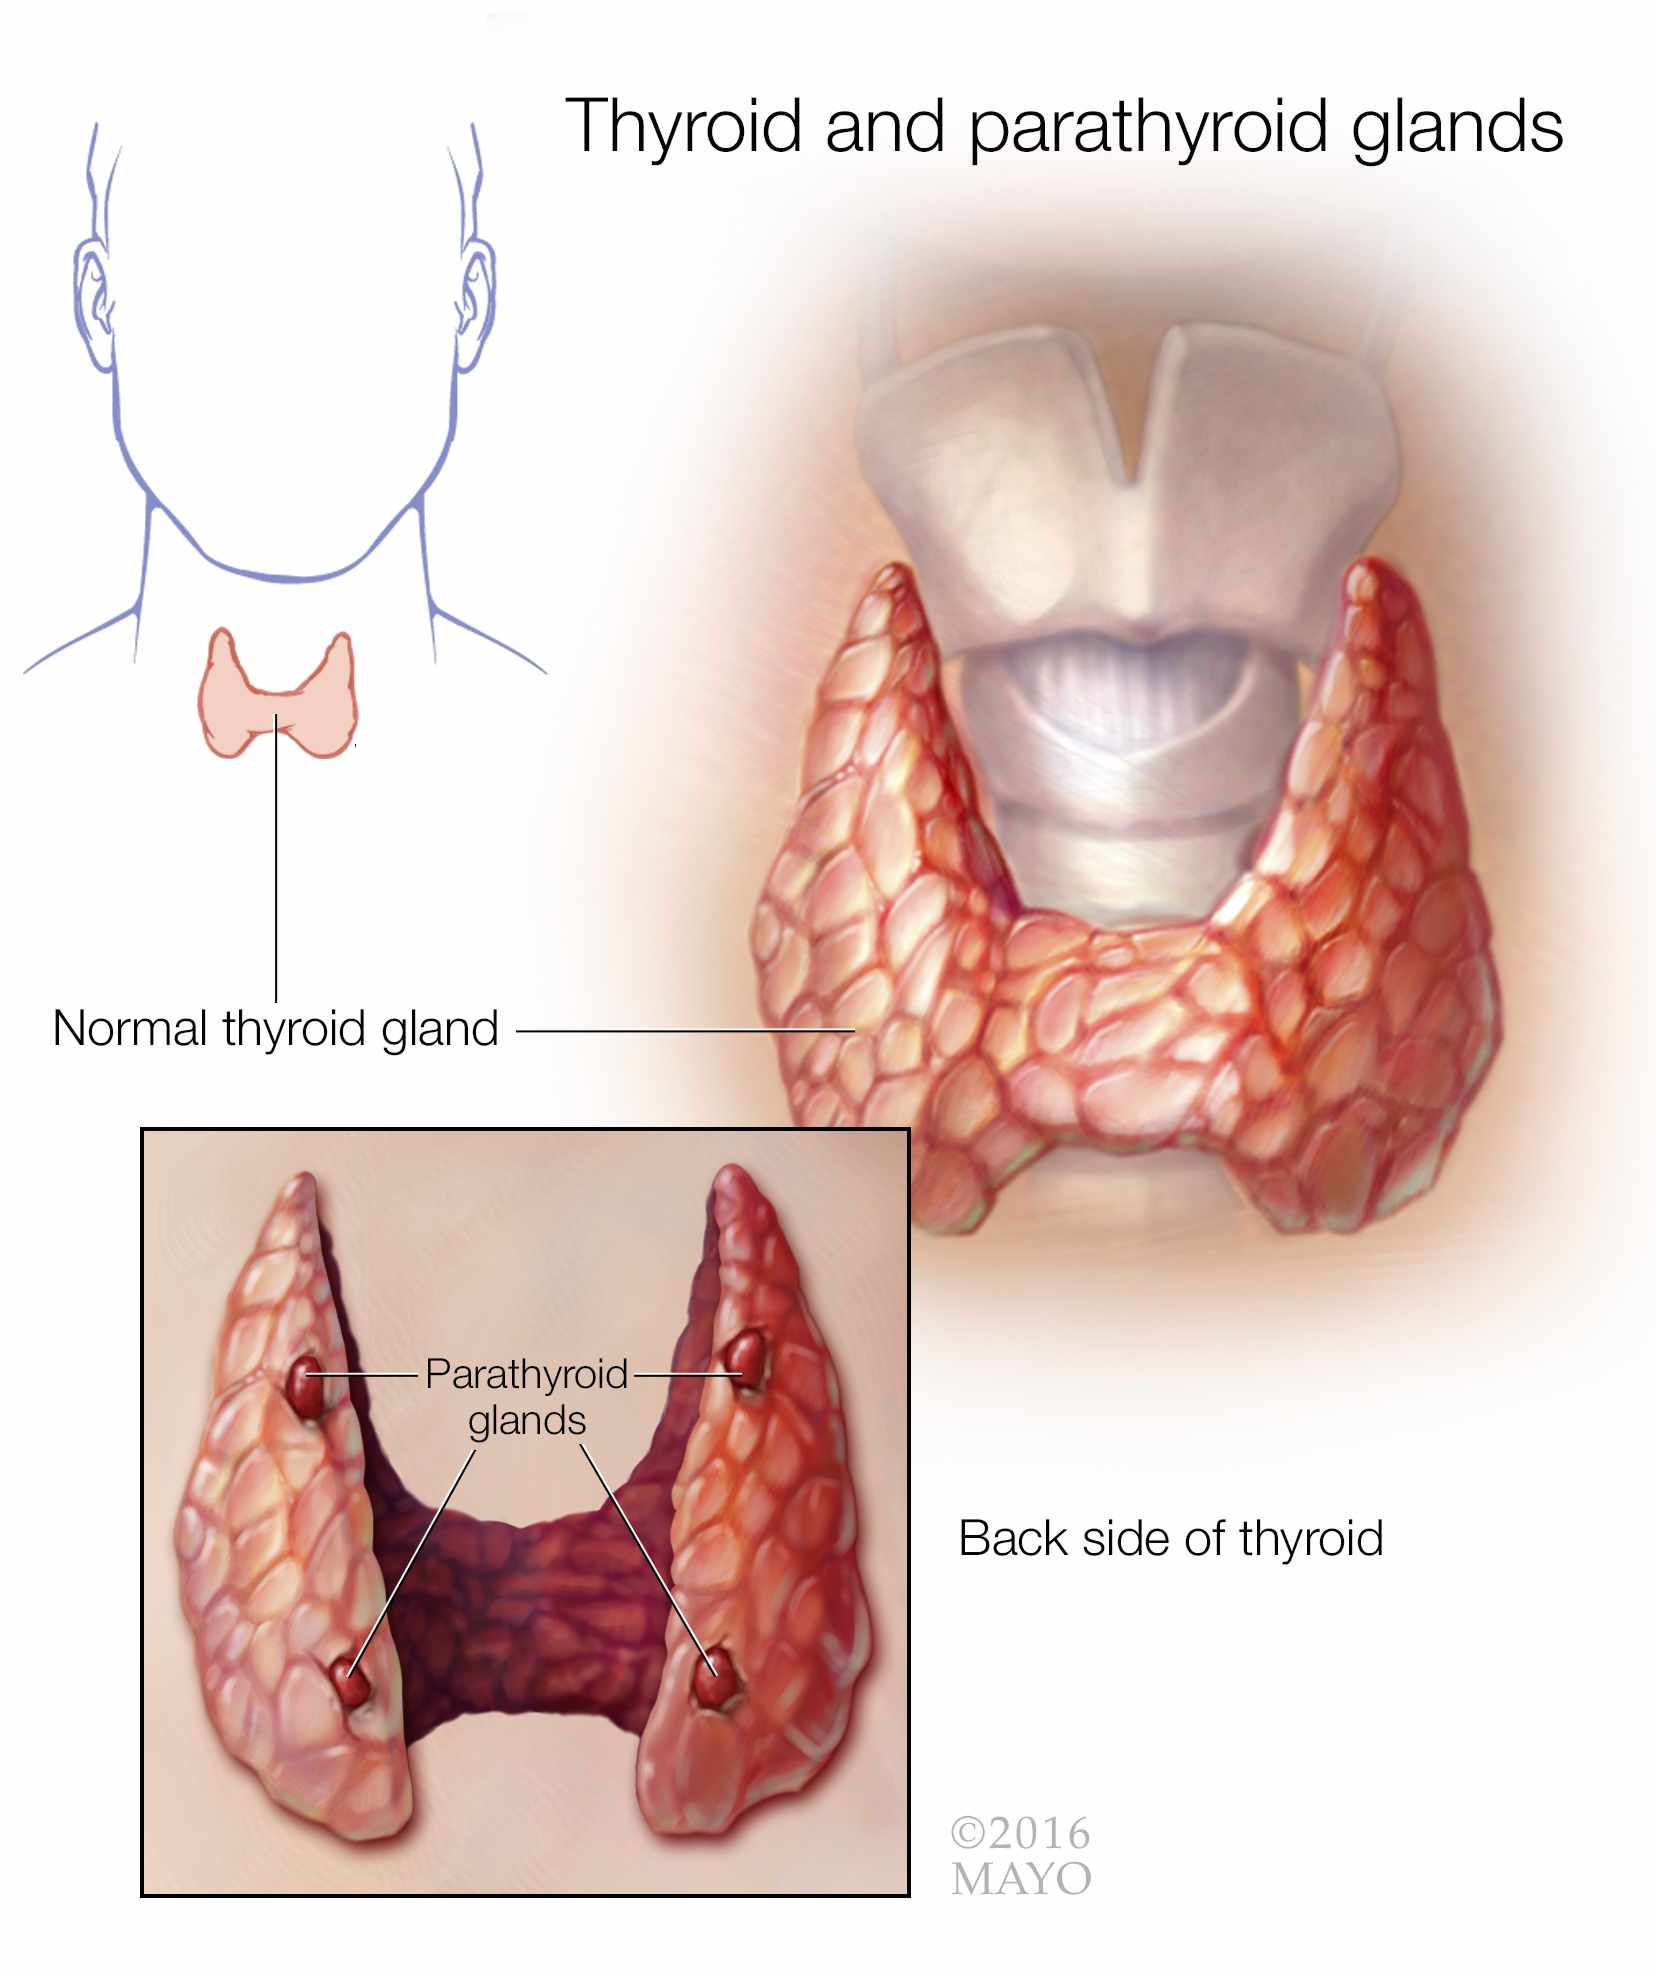 ilustración médica de las glándulas tiroides y paratiroides